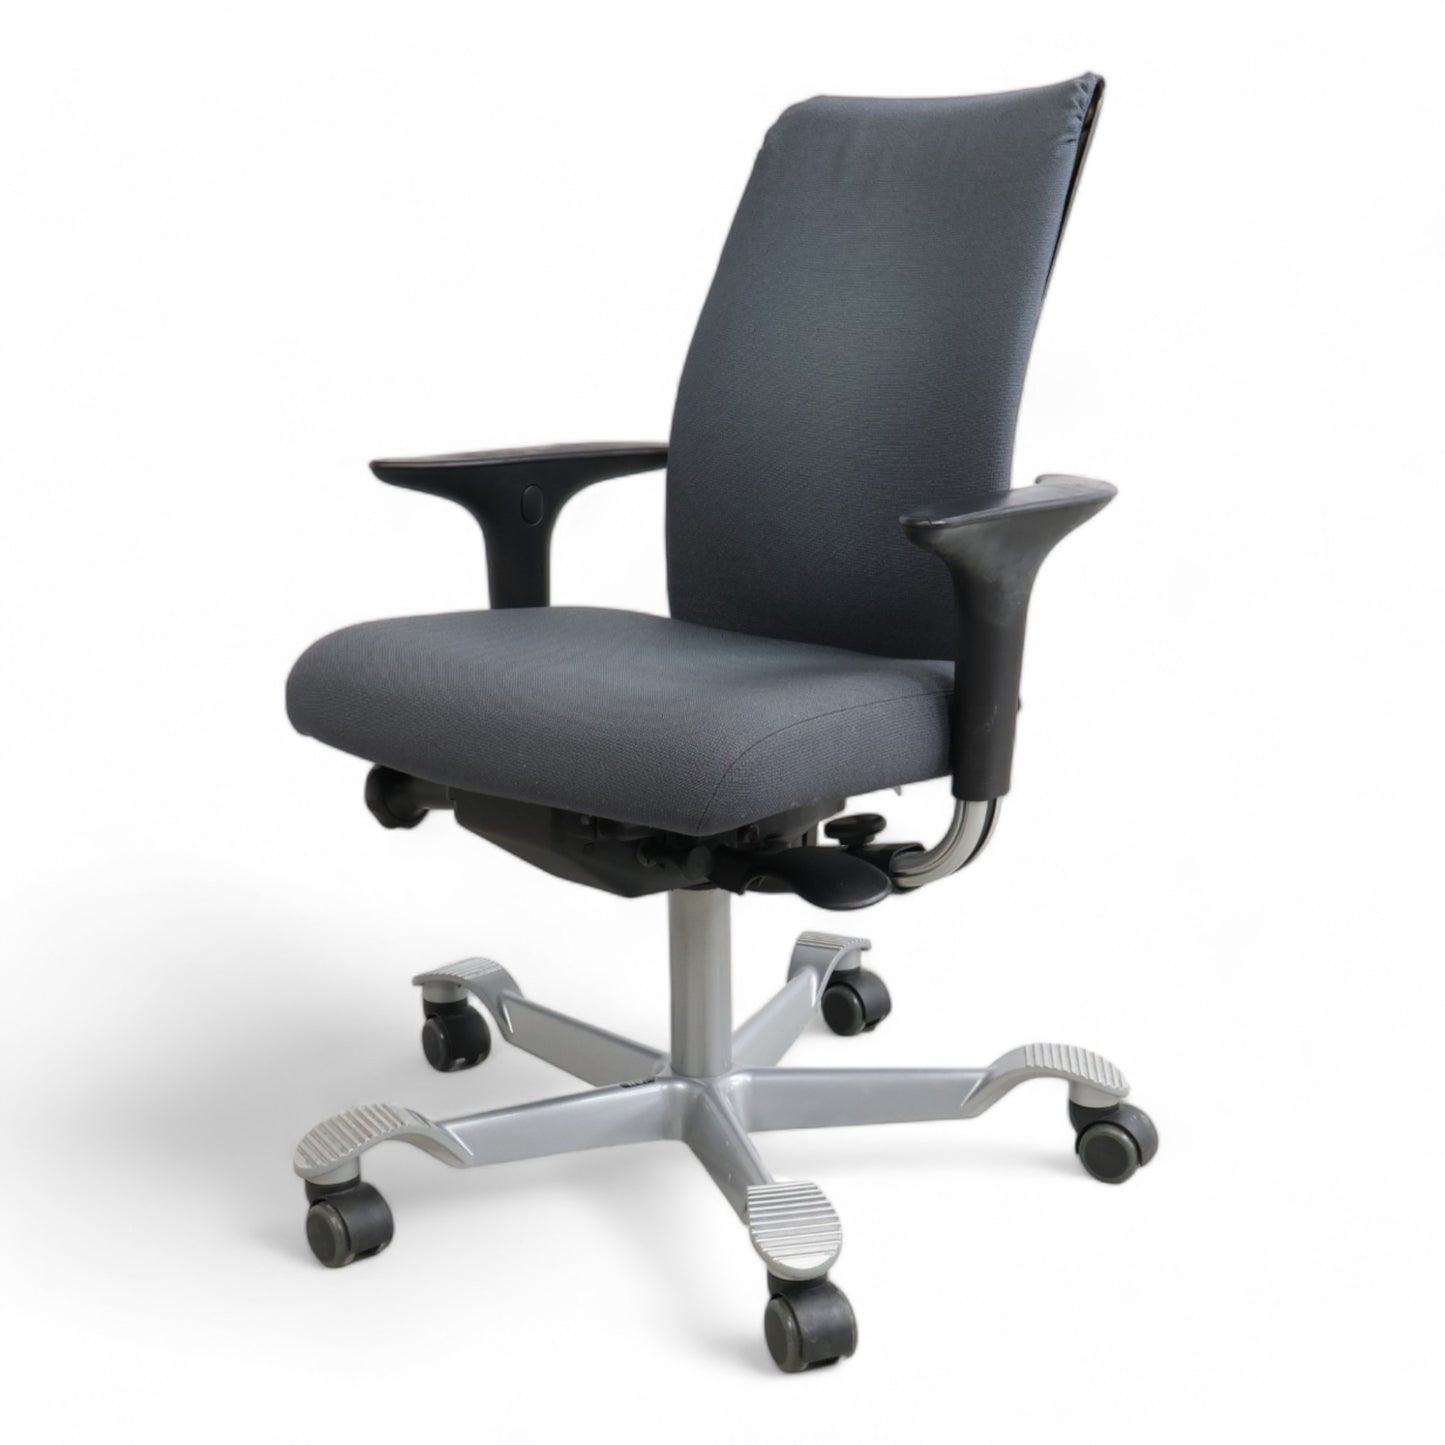 Nyrenset | Mørk grå Håg Futu kontorstol med justerbar høyde